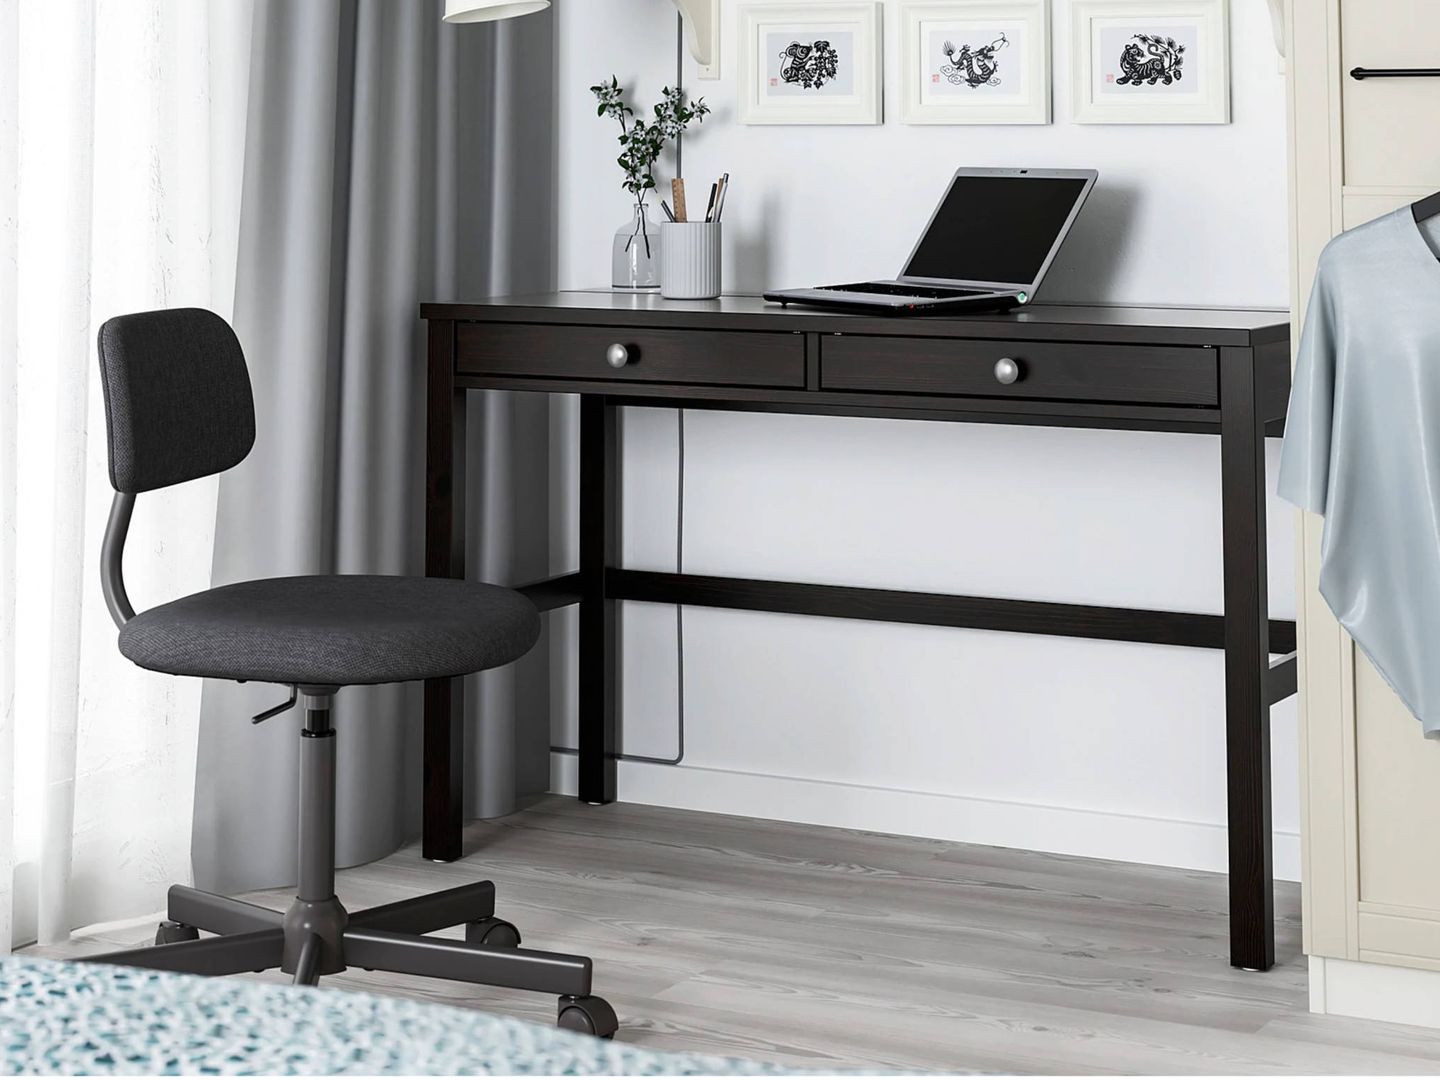 Elegantes escritorios de trabajo de Ikea. (Cortesía)